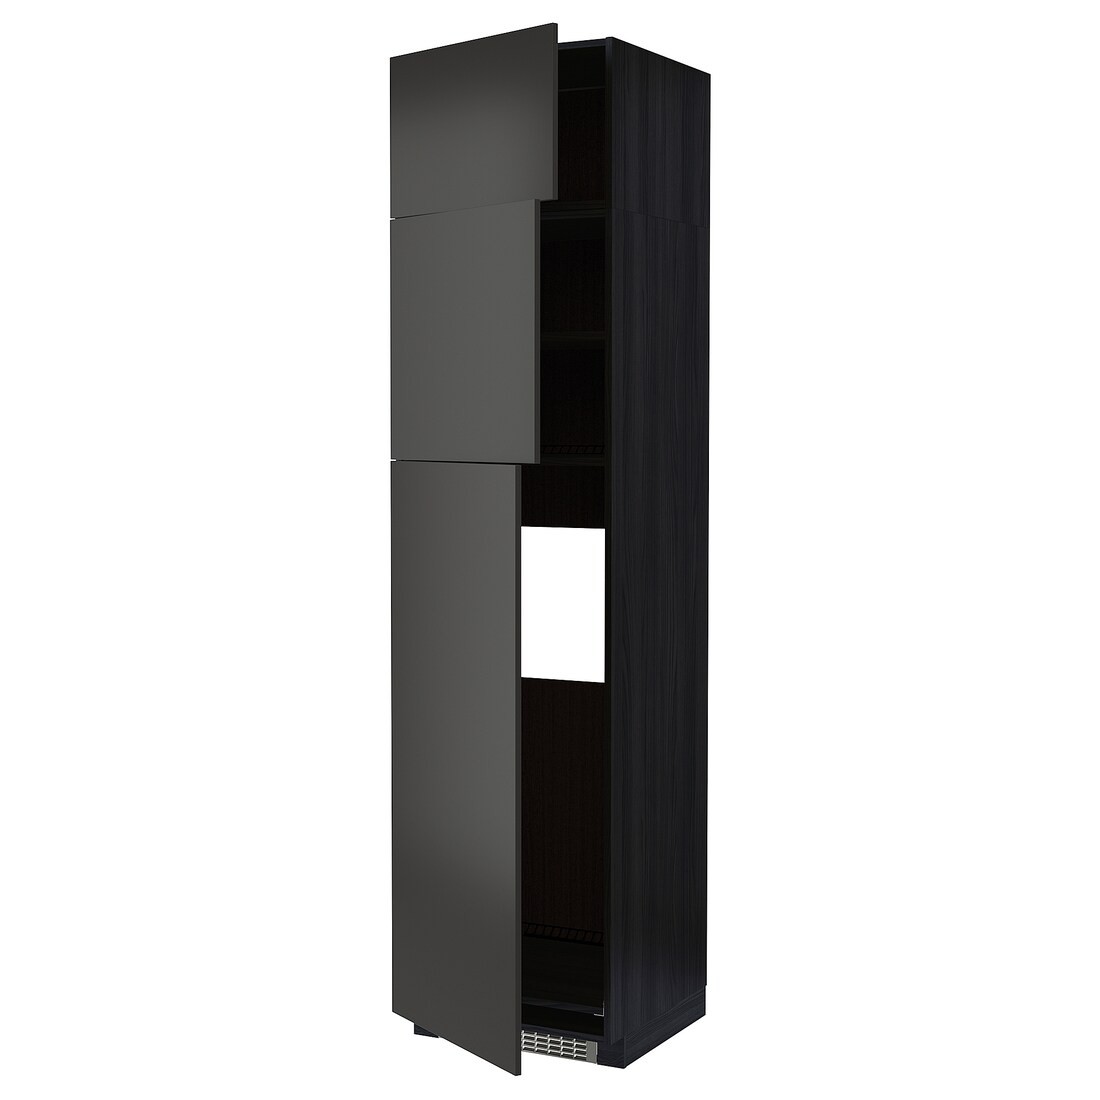 METOD МЕТОД Высокий шкаф для холодильника с 3 дверями, черный / Nickebo матовый антрацит, 60x60x240 см